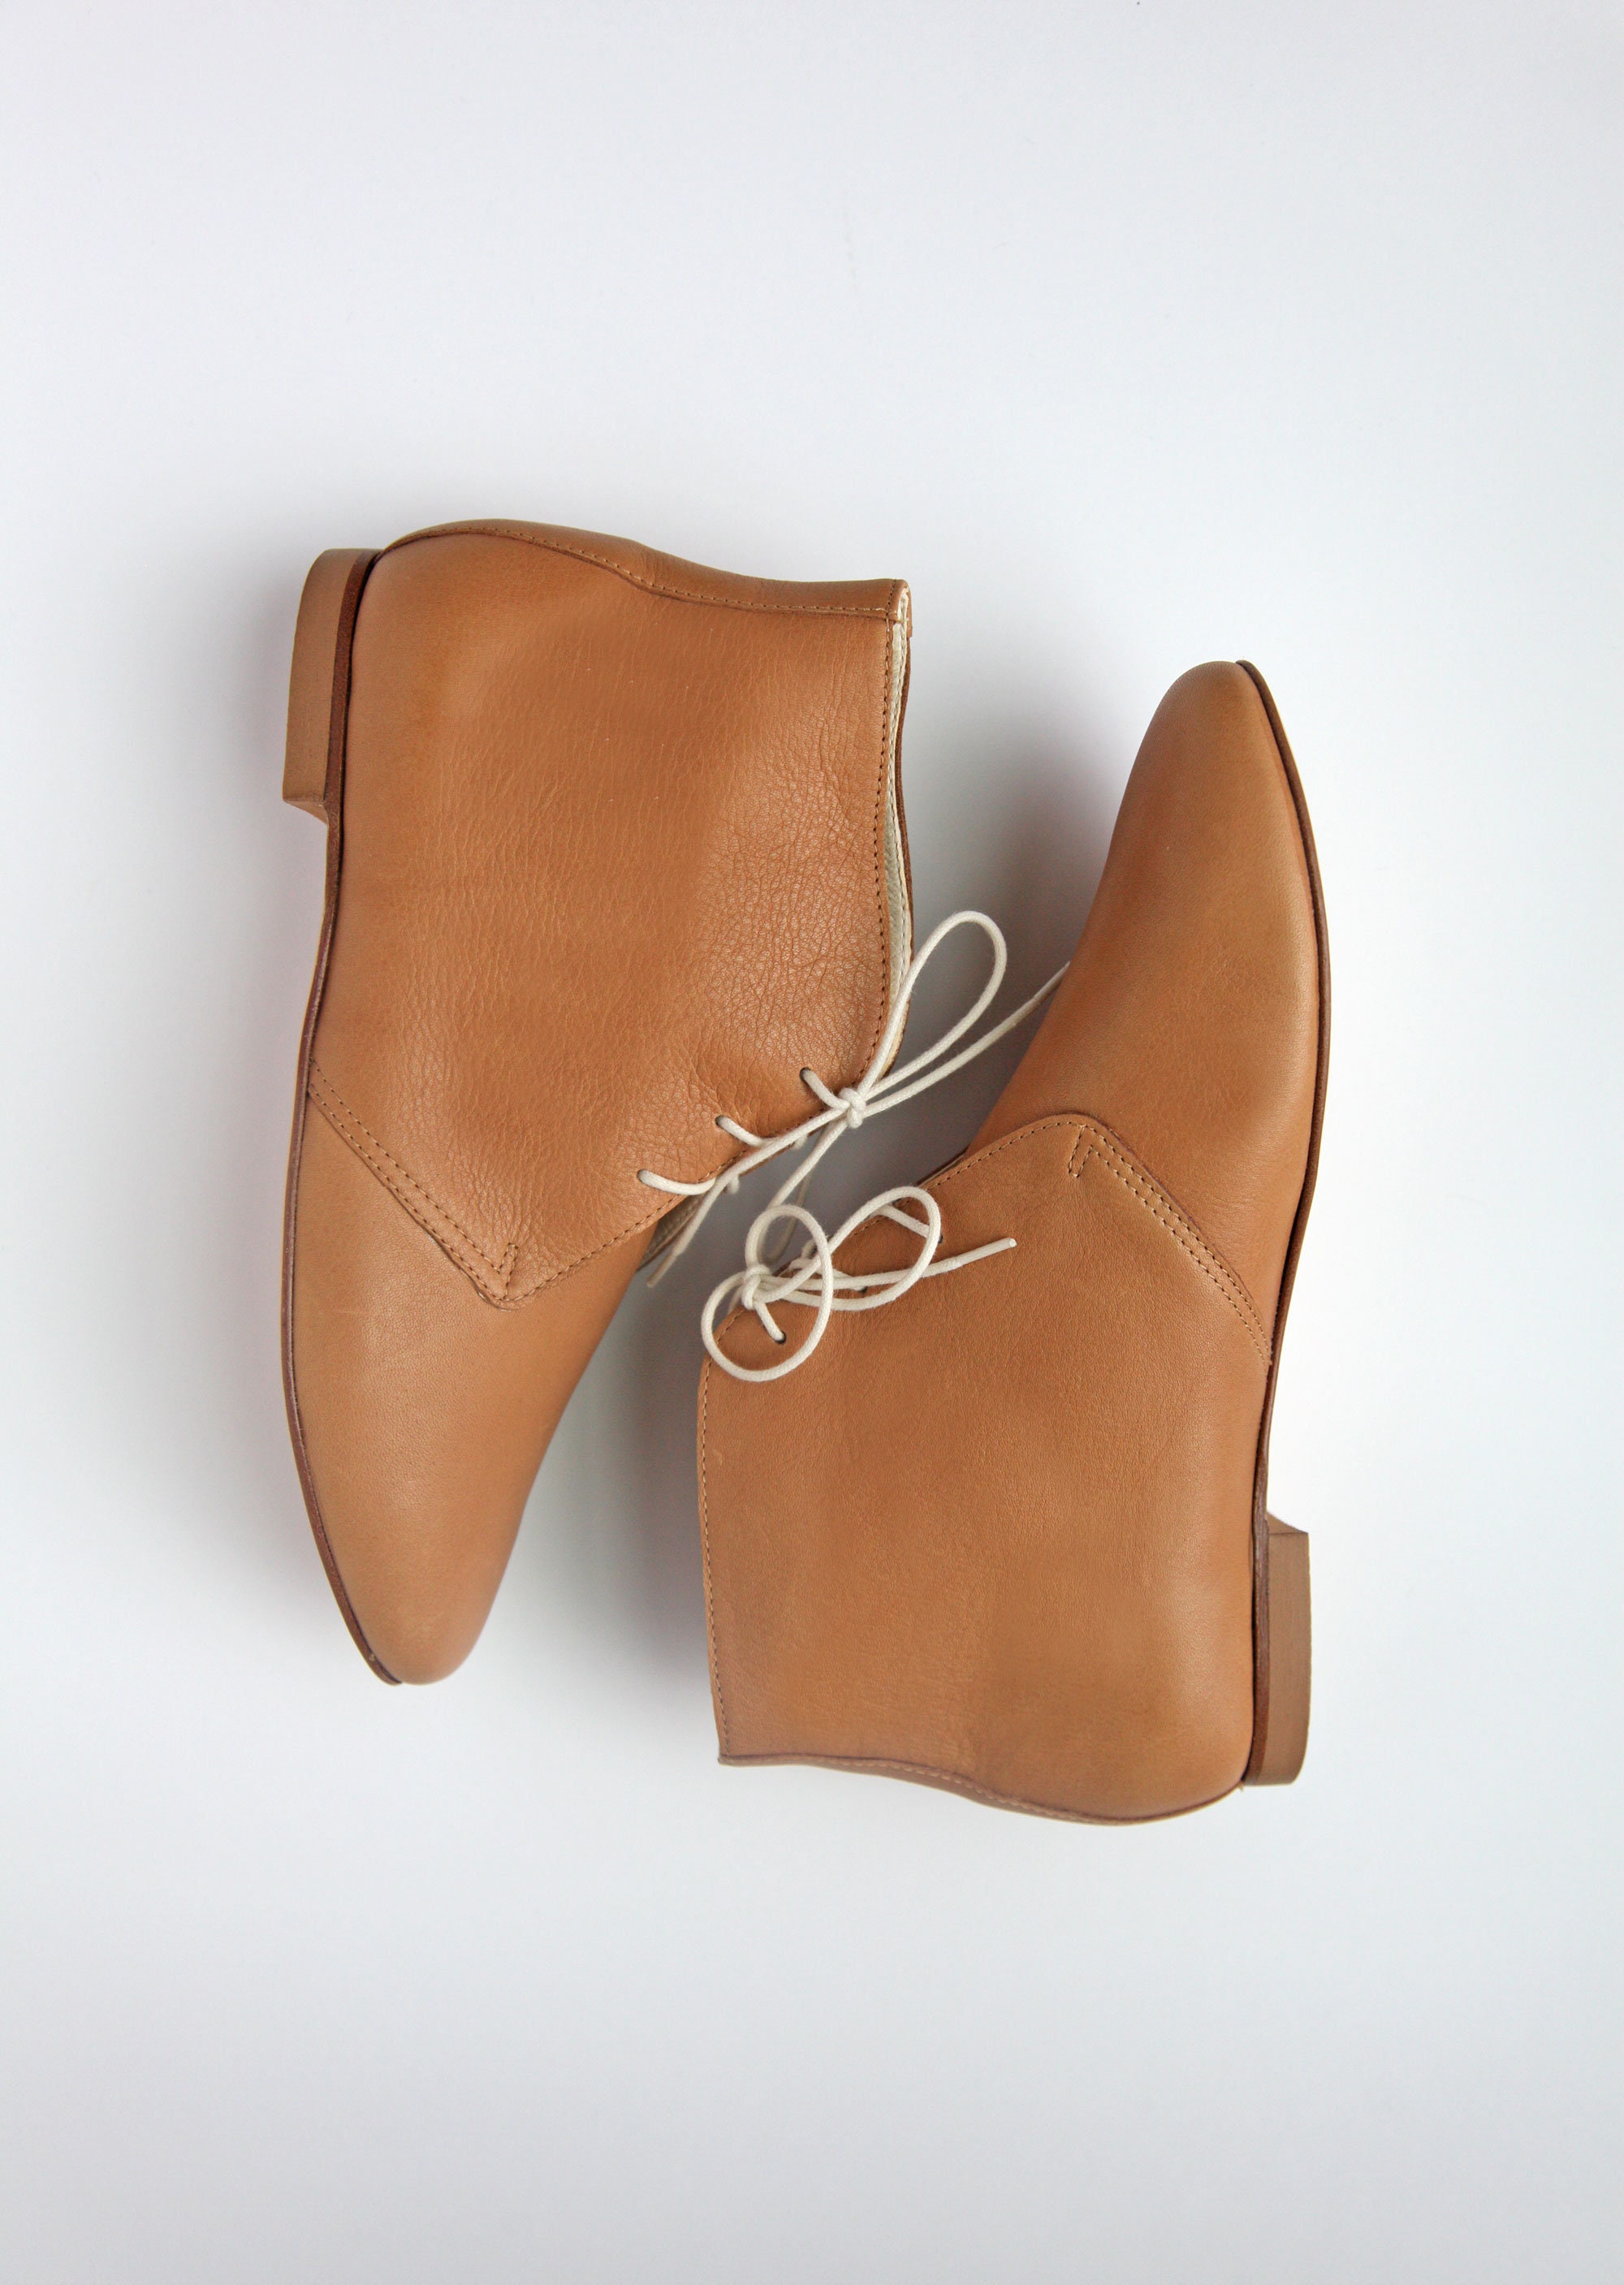 Svække gennemførlig Banzai Light Brown Ankle Boots Low Heel Booties Tan Leather Shoes - Etsy Sweden